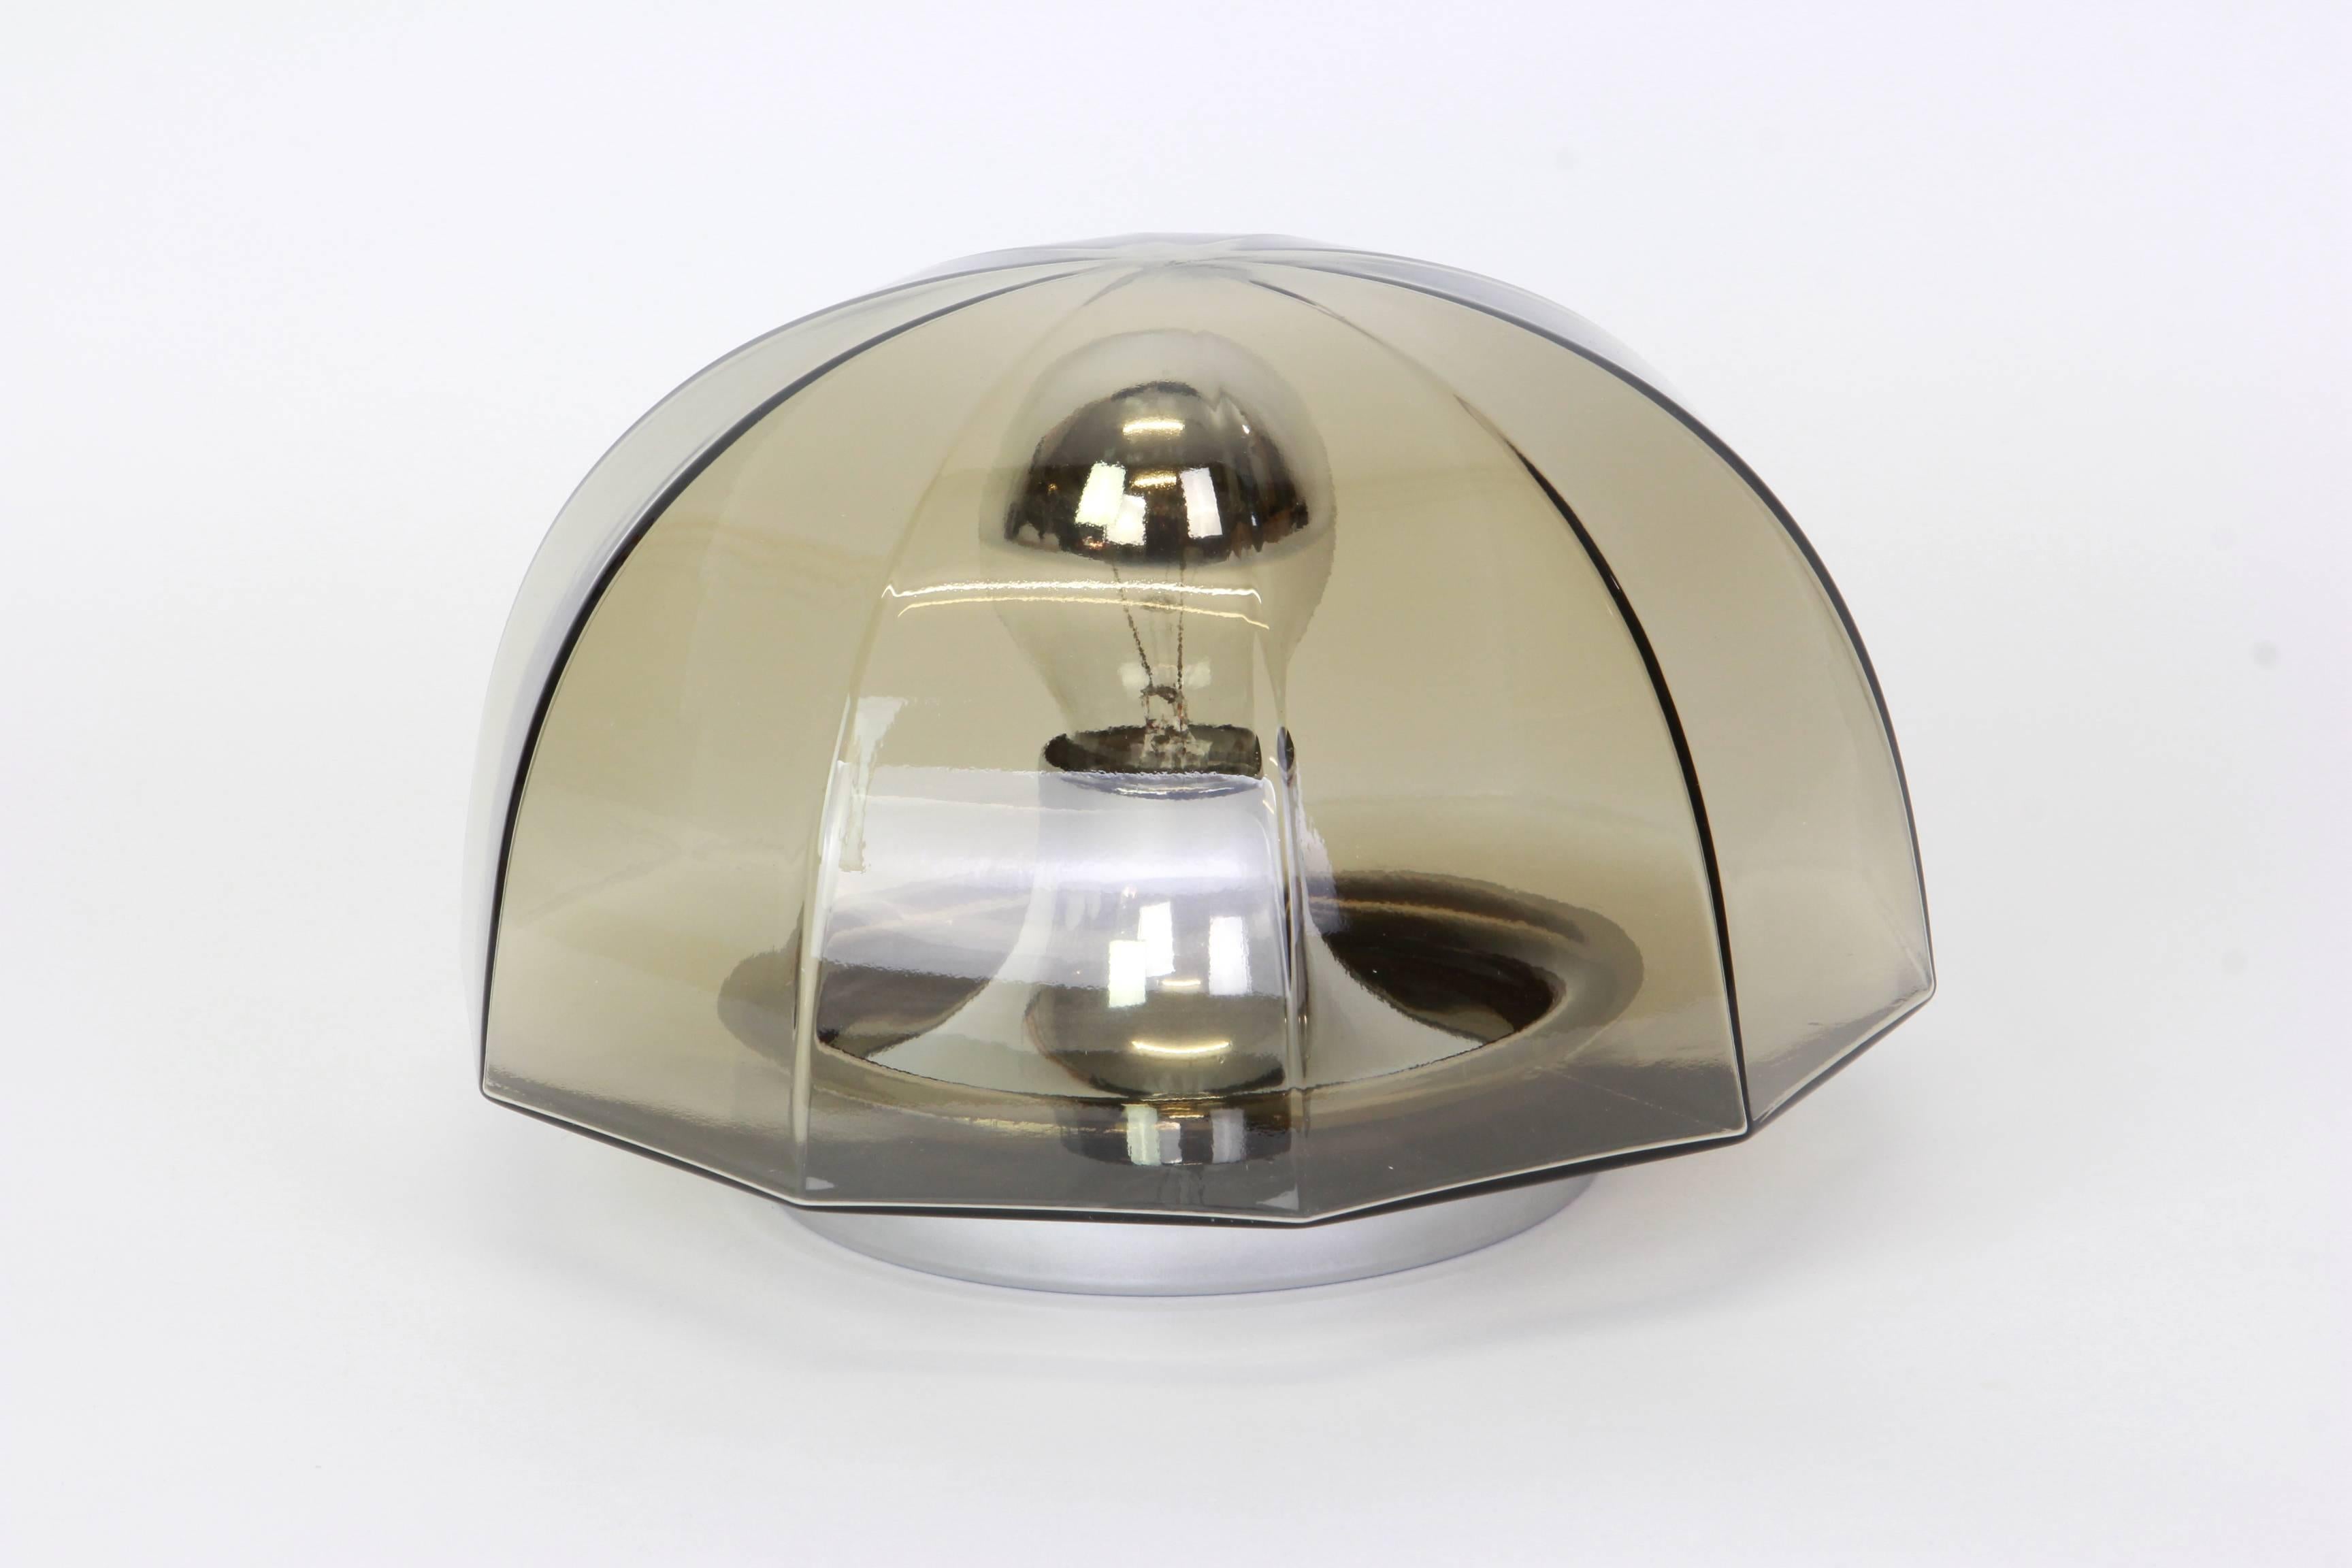 Paar Räucherglas-Leuchten oder flush mount hergestellt von Hillebrand Deutschland, ca. 1960-1969. Tolle Form und facettenreiches Rauchglas.

Hochwertig und in sehr gutem Zustand. Gereinigt, gut verkabelt und einsatzbereit. 

Jede Leuchte